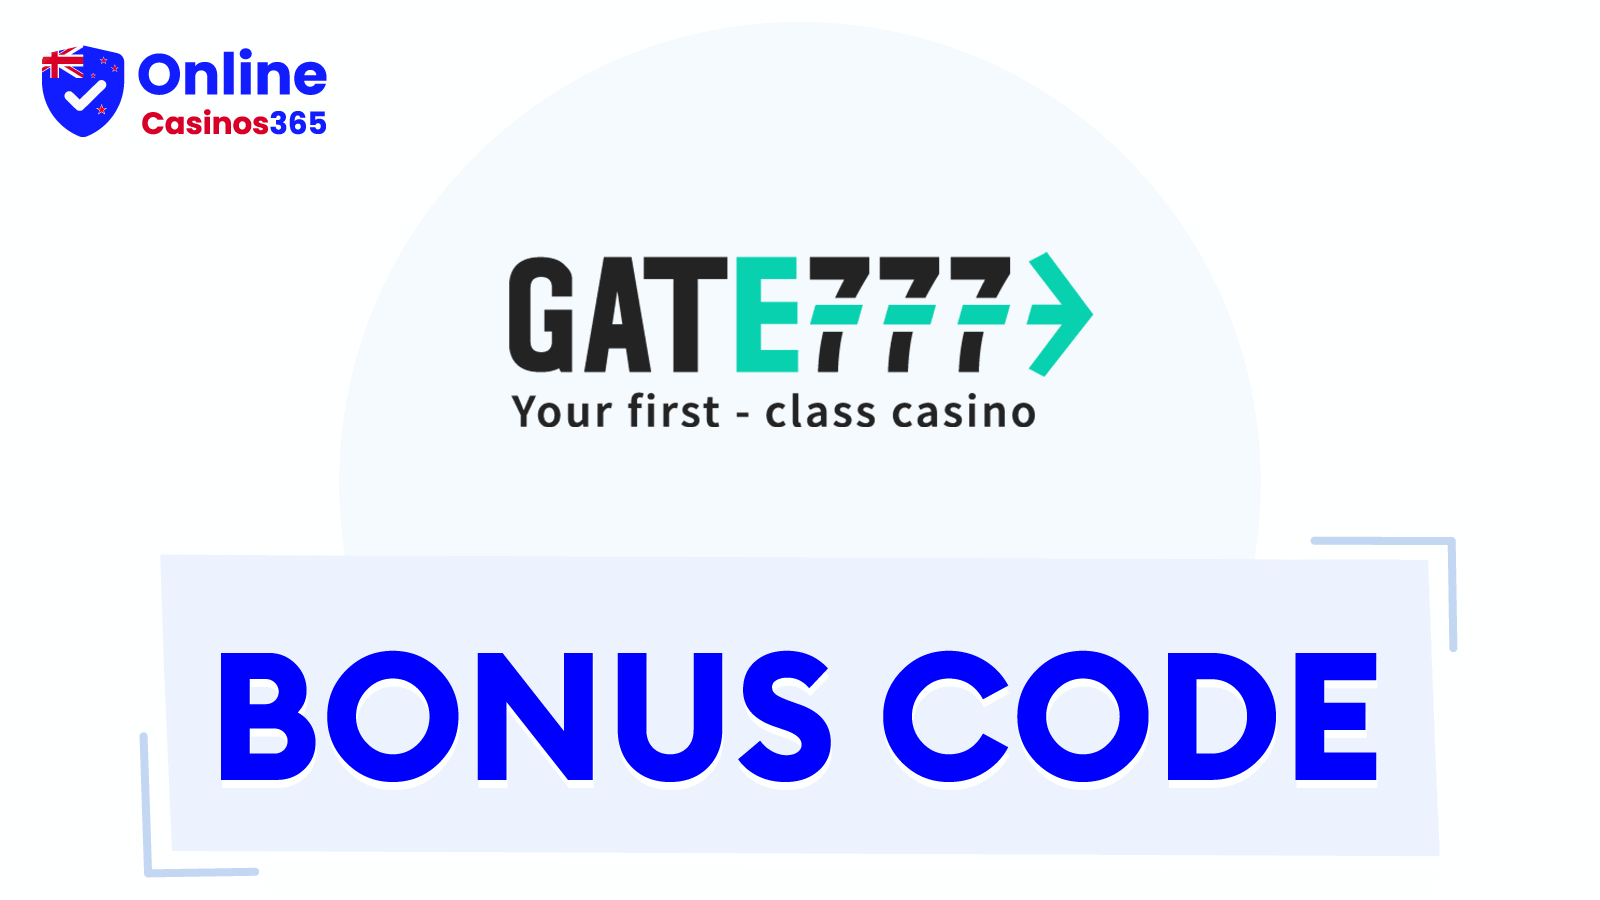 Gate777 Casino Bonus Codes